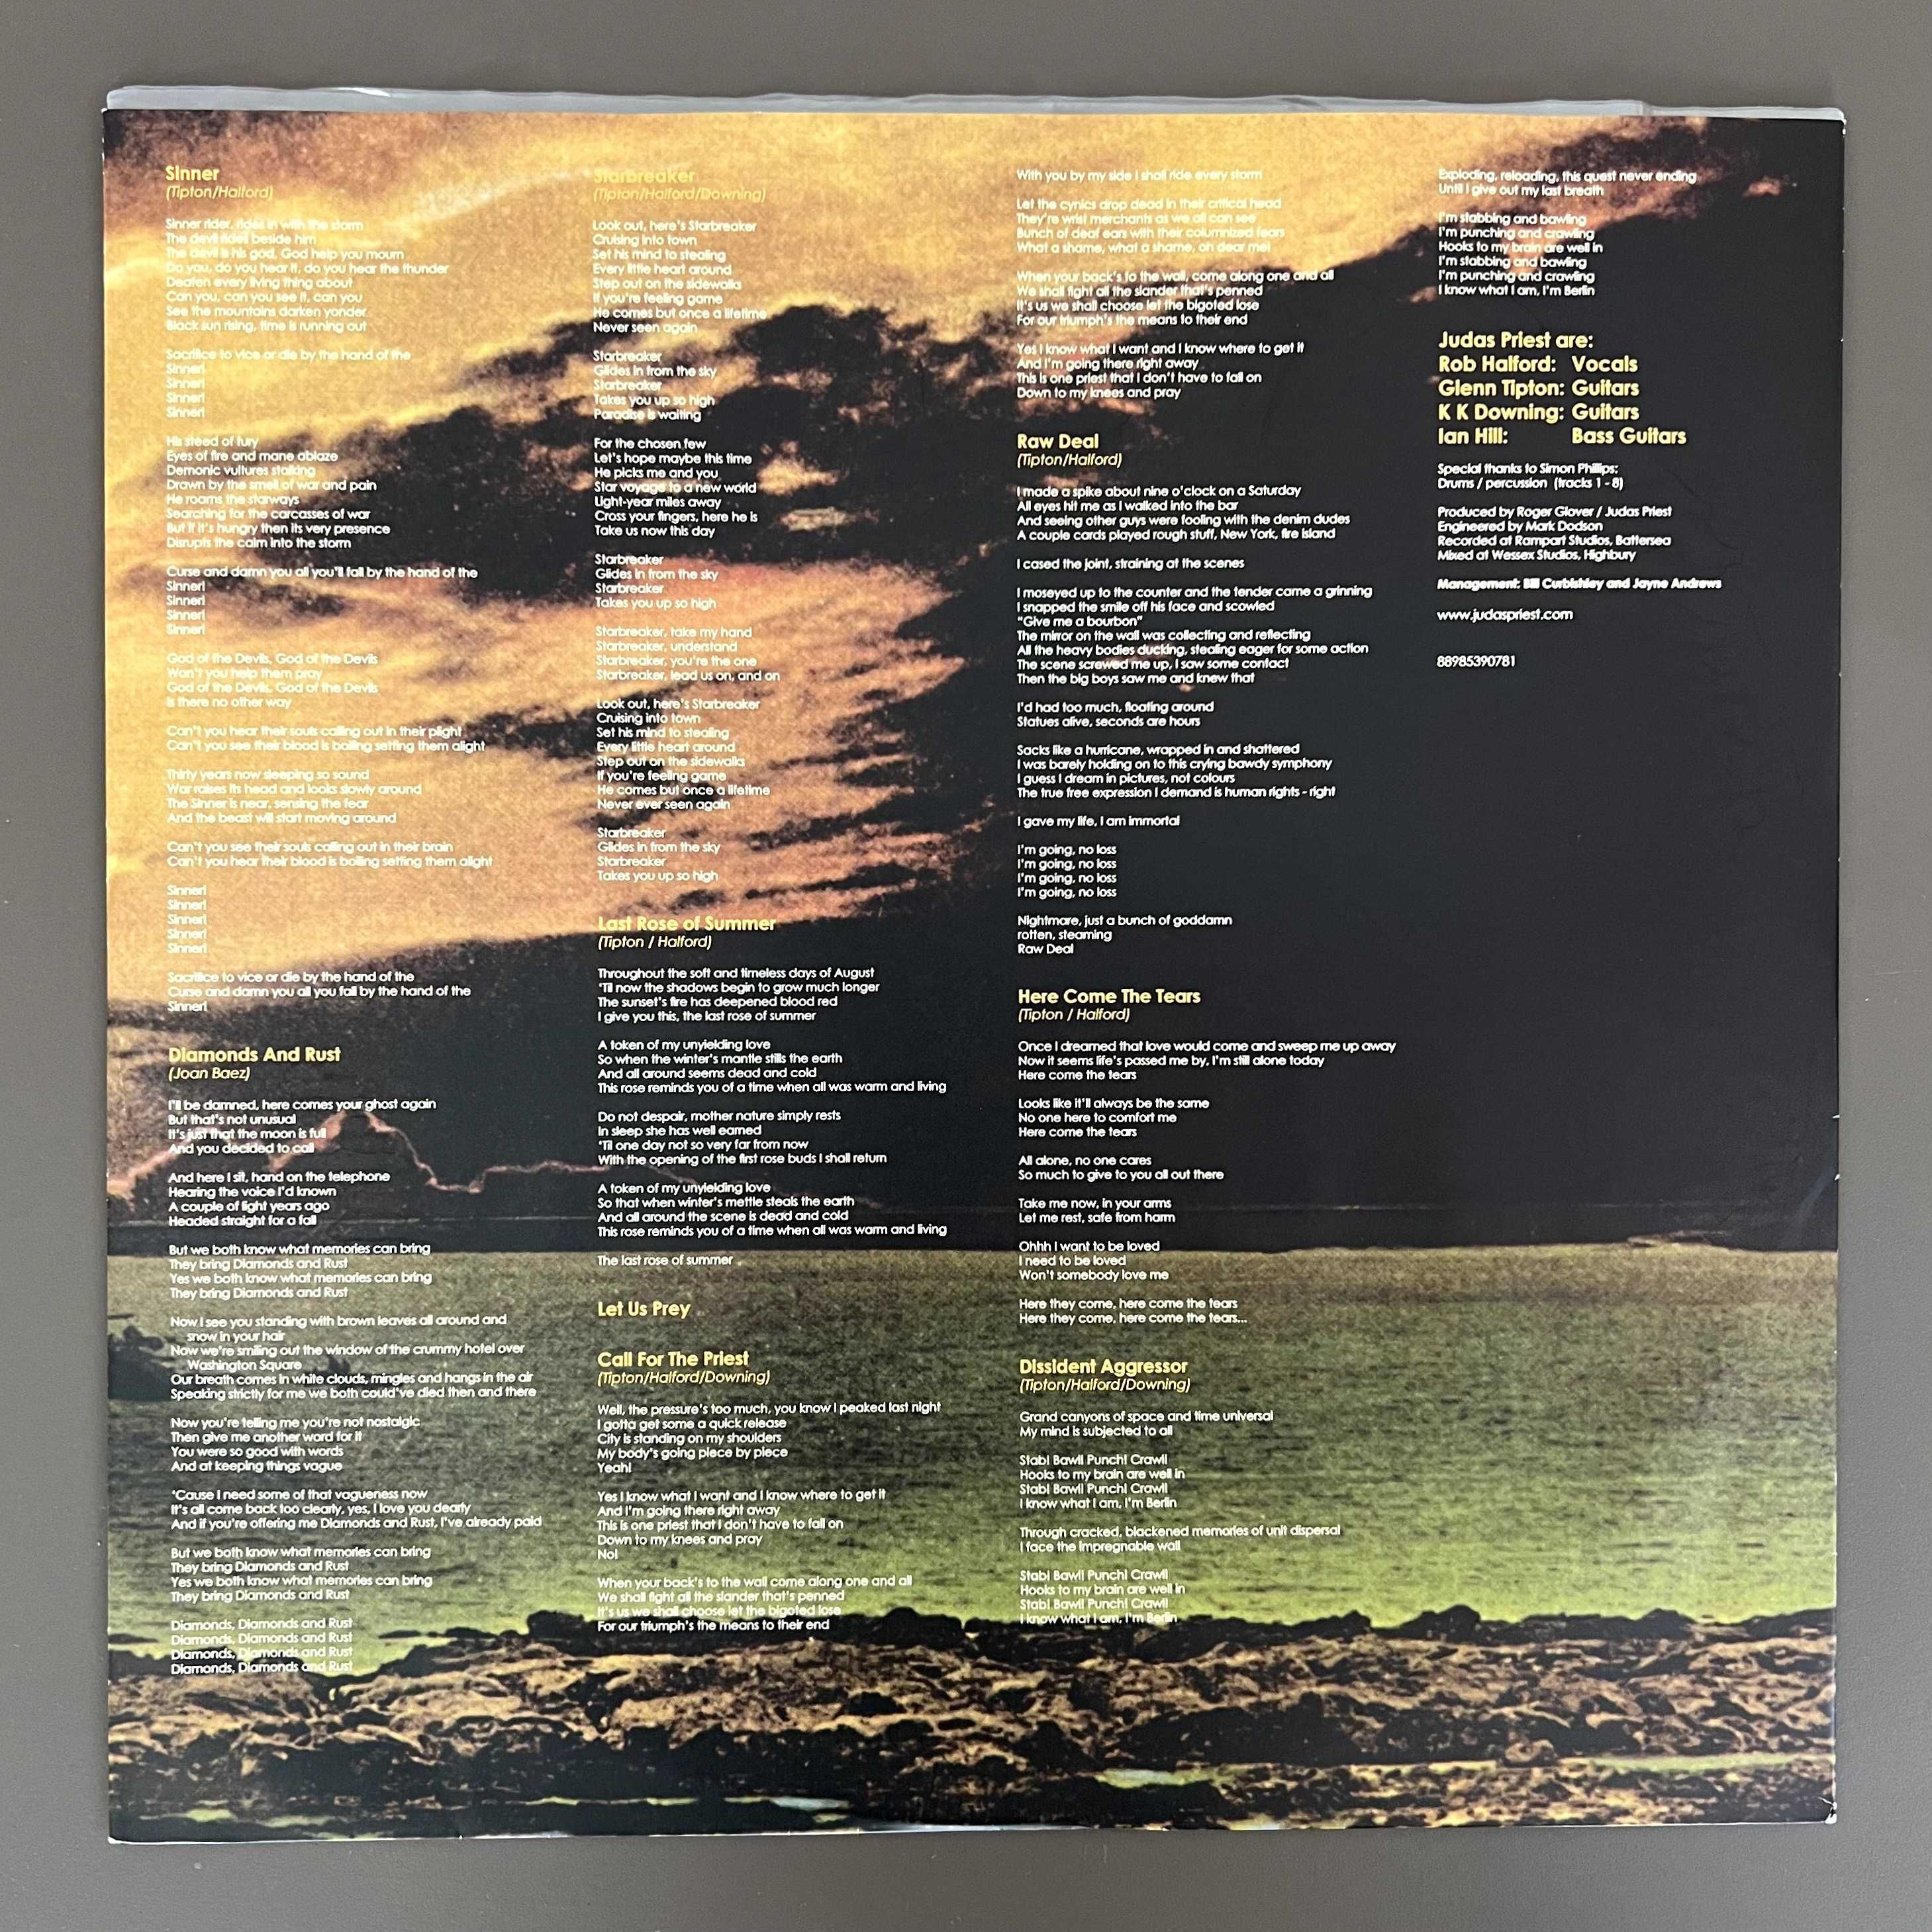 Judas Priest - Sin After Sin, Vinyl 180gr, M/NM